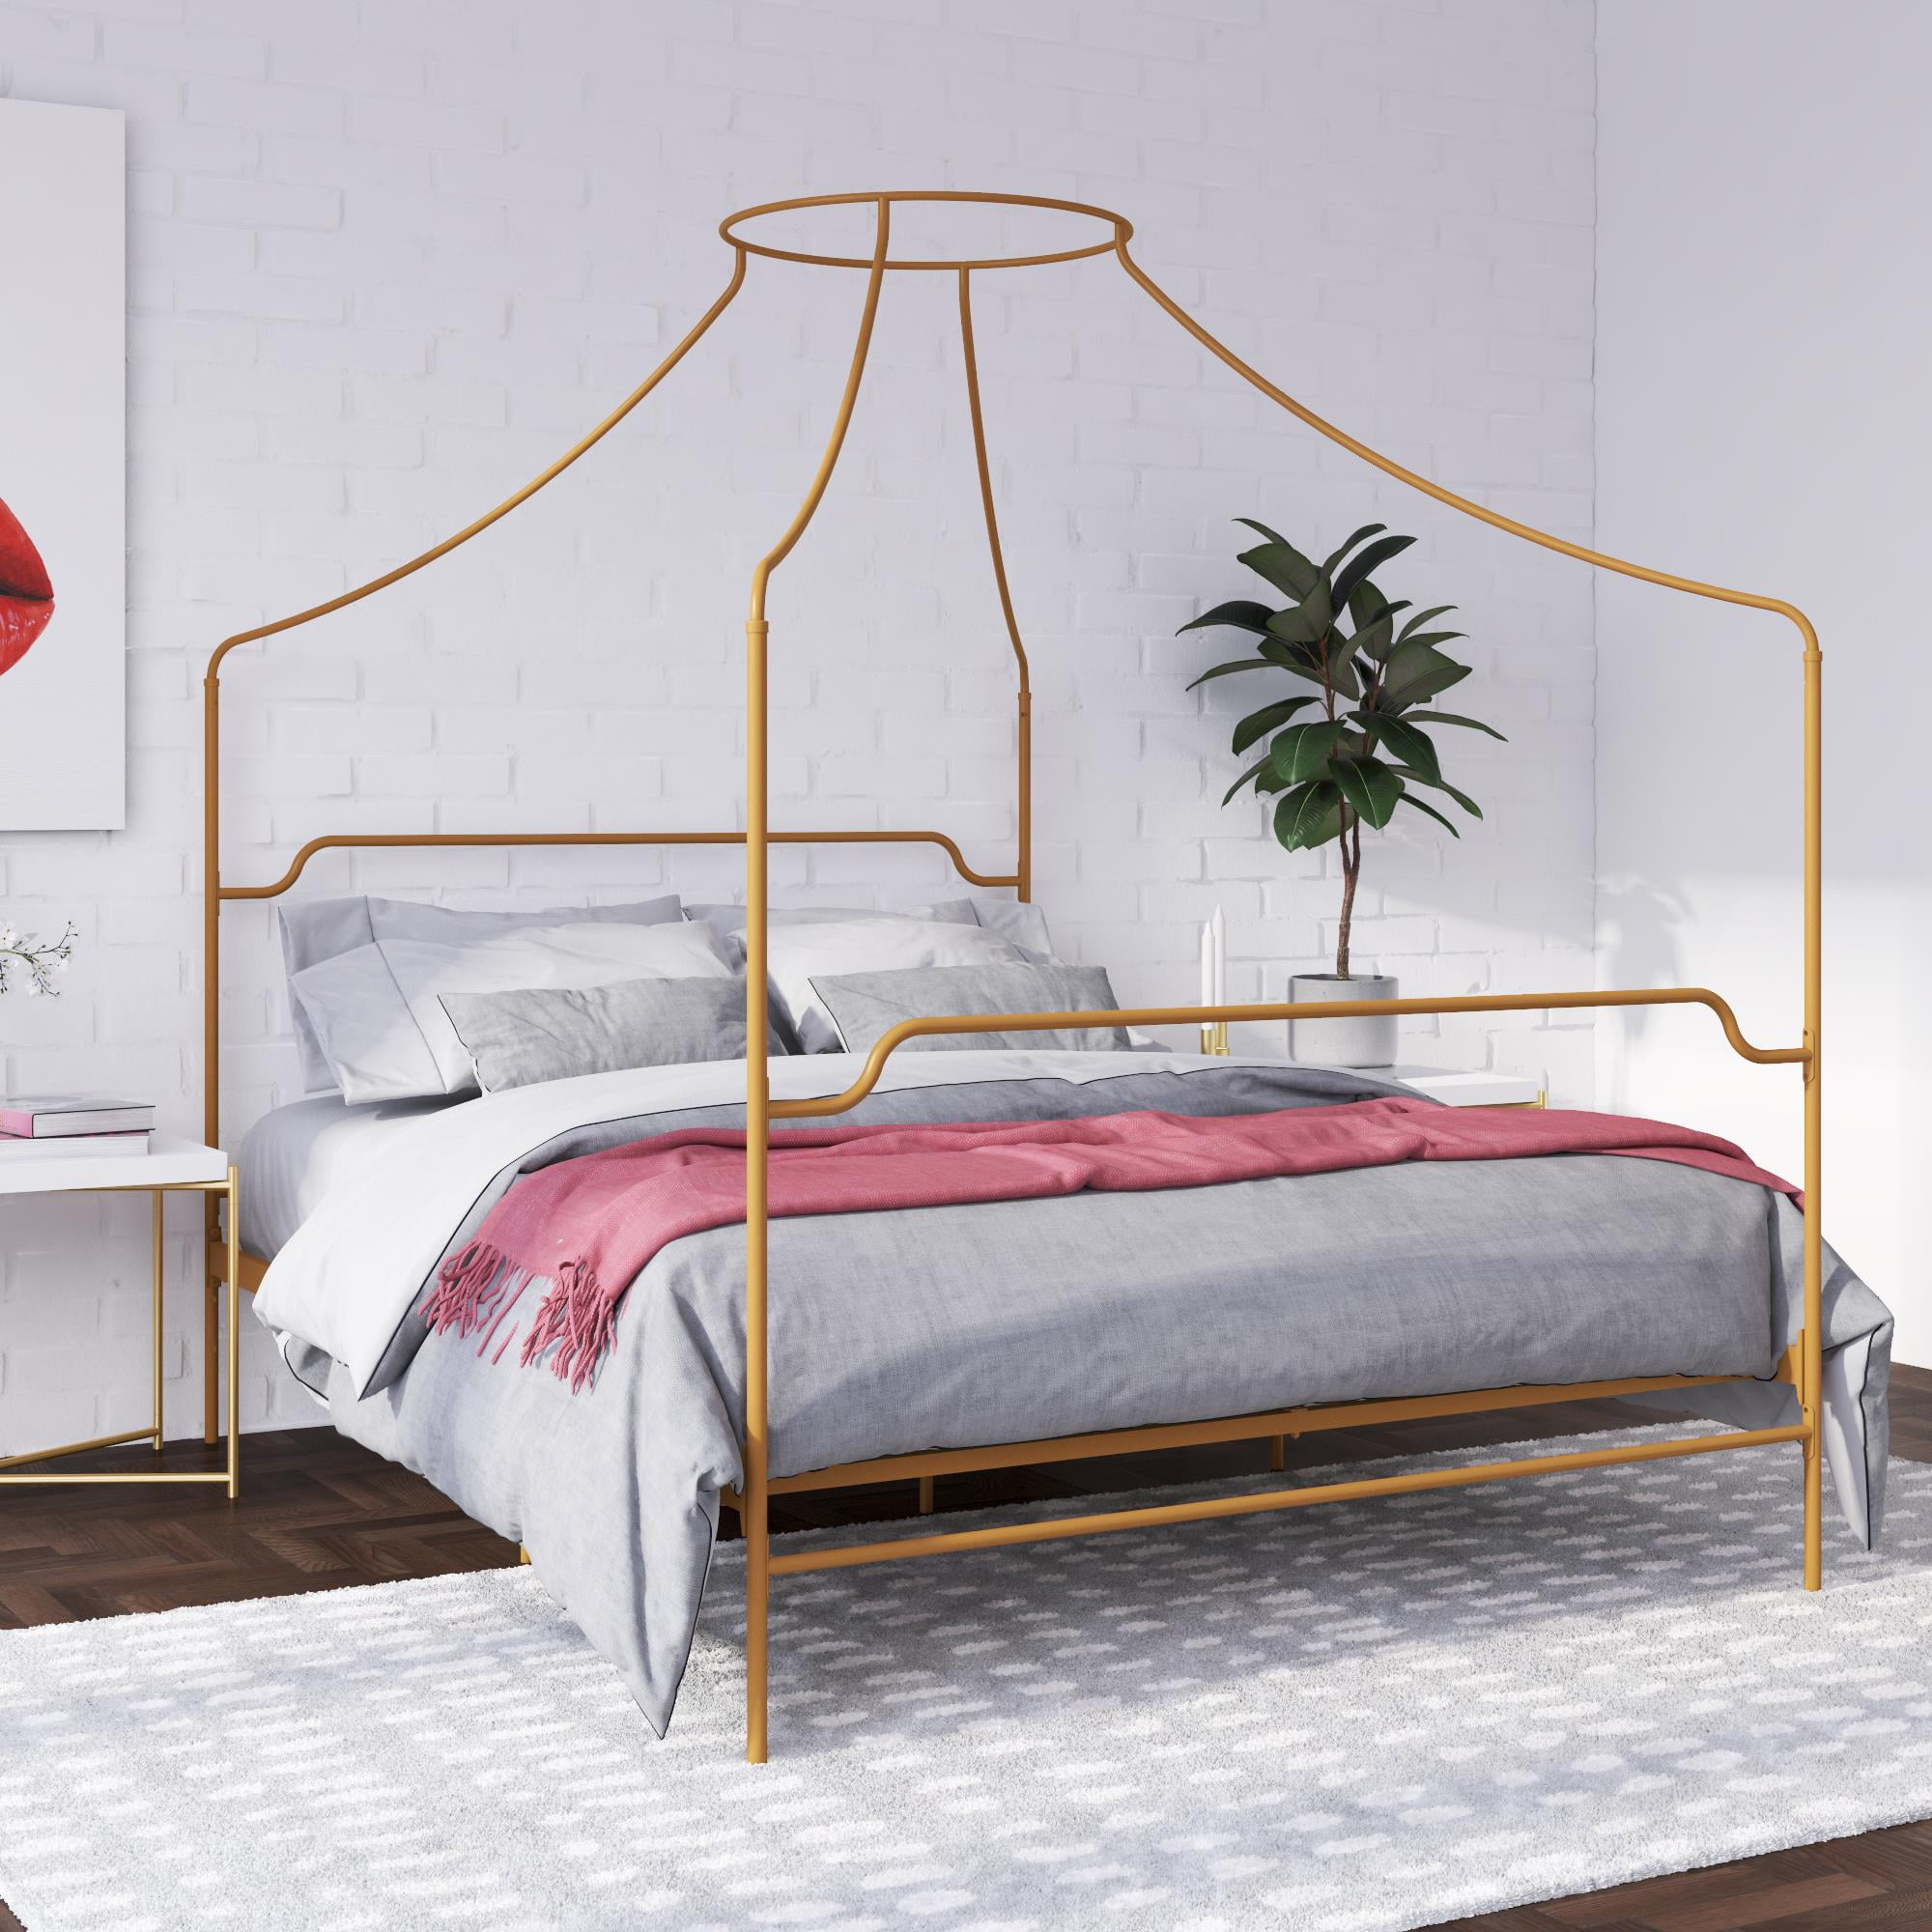 Novogratz Camilla Metal Canopy Bed, Queen Size Frame, Gold - Walmart.com